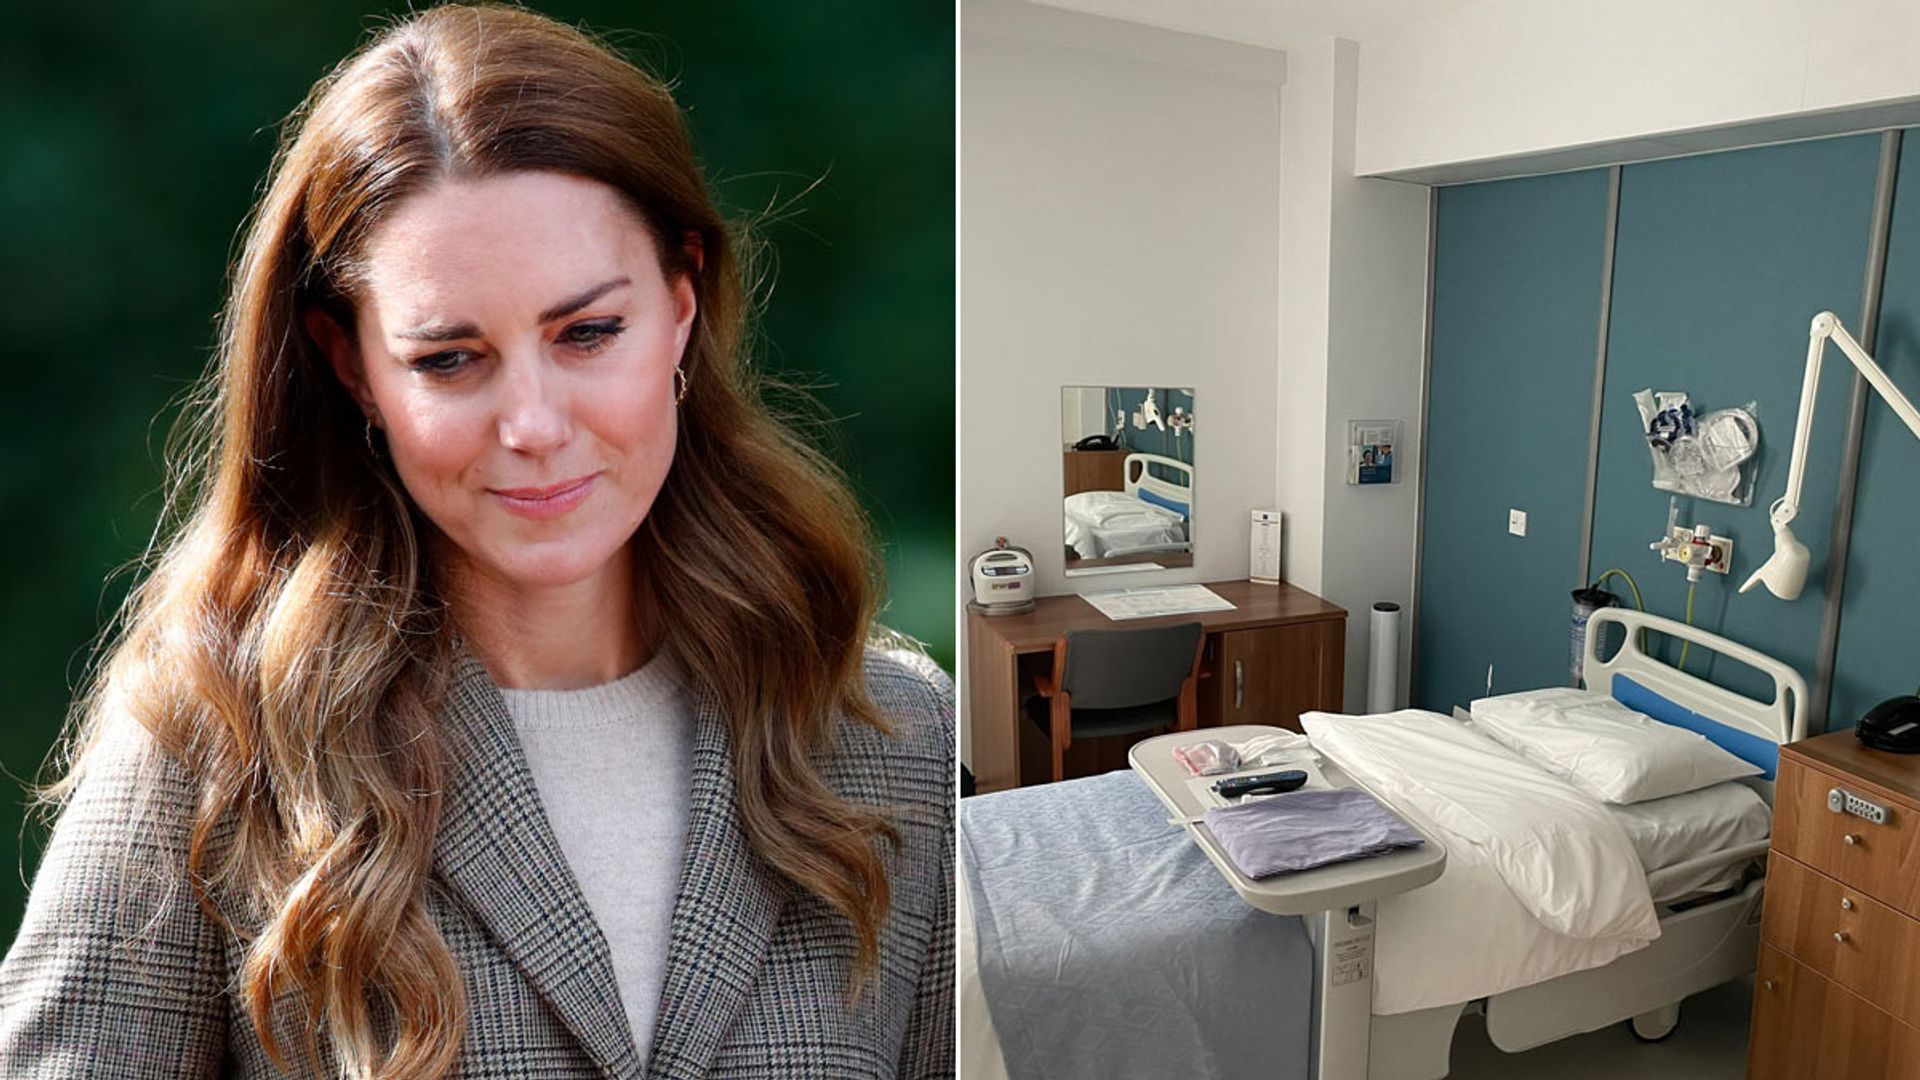 A split image of Princess Kate and a hospital room 